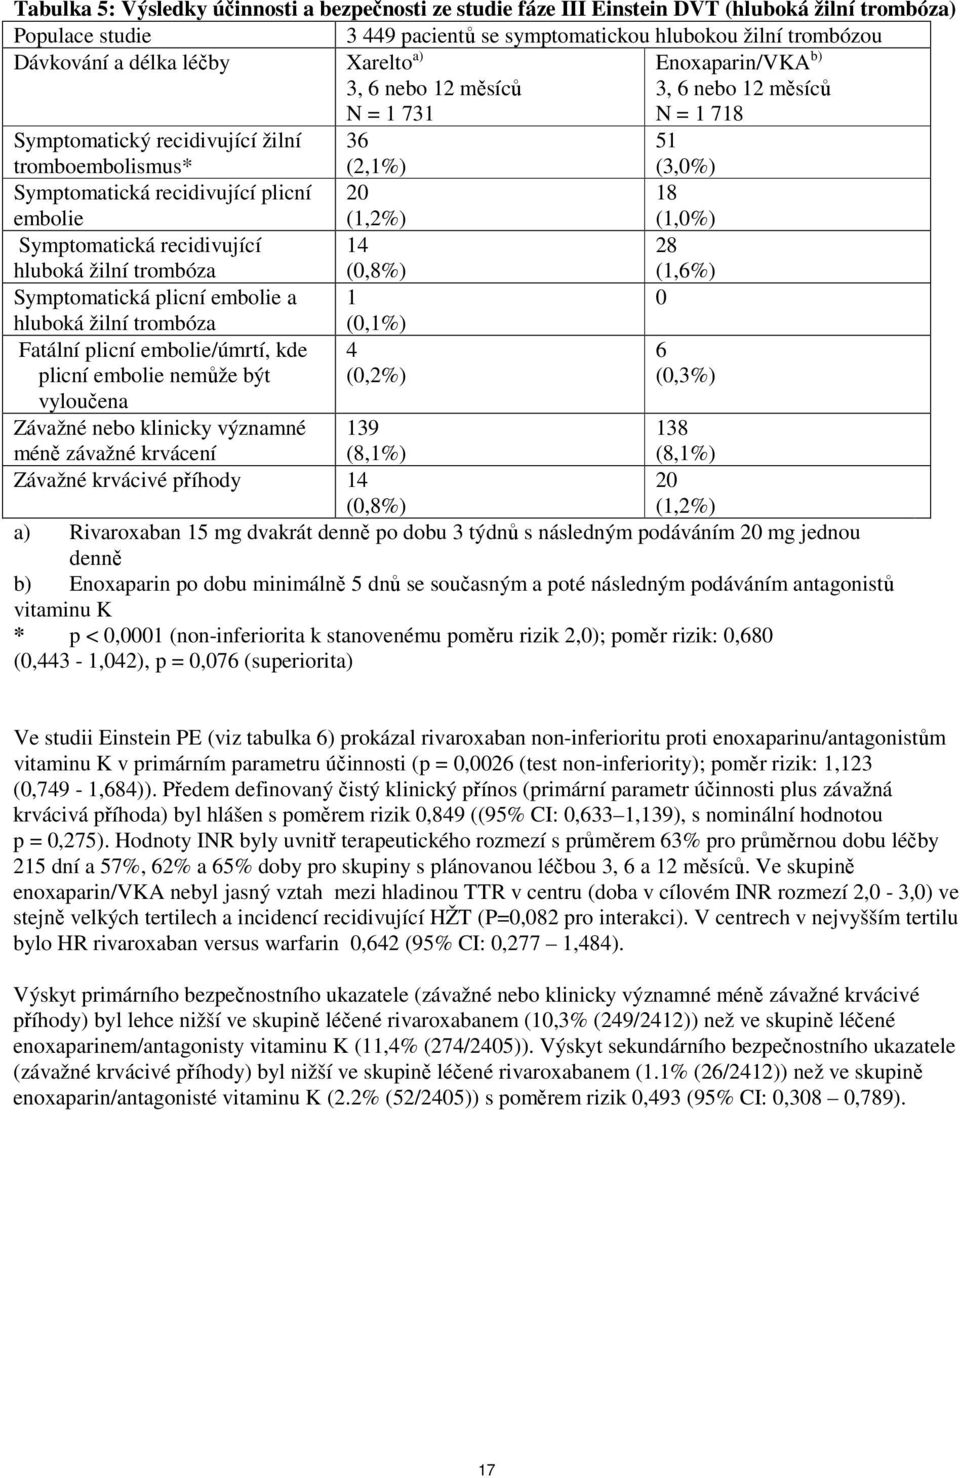 embolie 20 (1,2%) 18 (1,0%) Symptomatická recidivující hluboká žilní trombóza 14 (0,8%) 28 (1,6%) Symptomatická plicní embolie a 1 0 hluboká žilní trombóza (0,1%) Fatální plicní embolie/úmrtí, kde